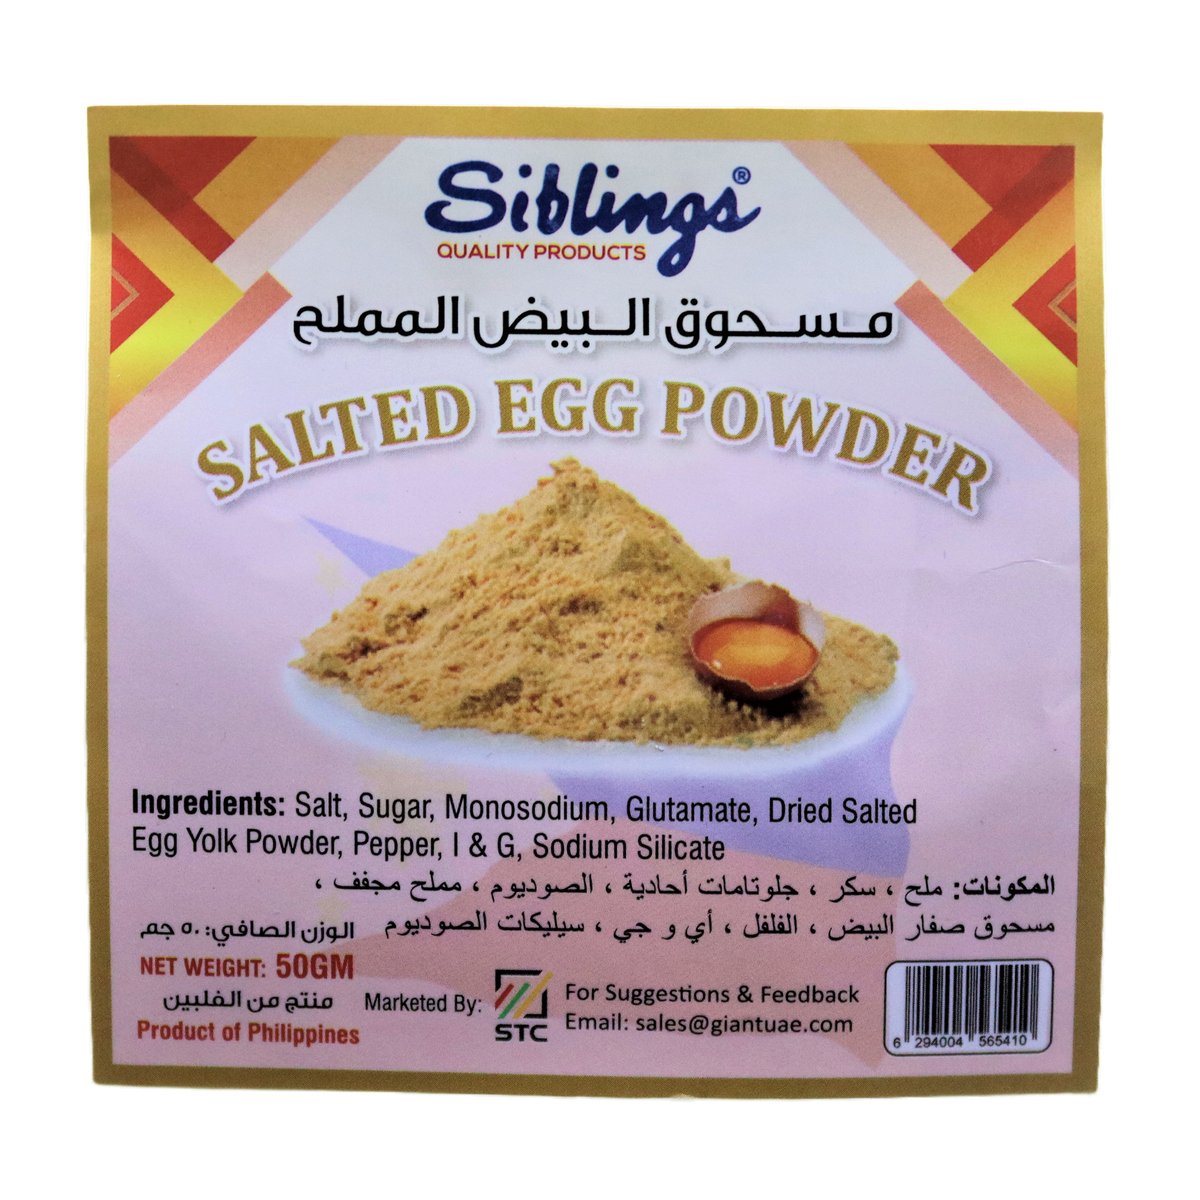 Siblings Salted Egg Powder 50 g